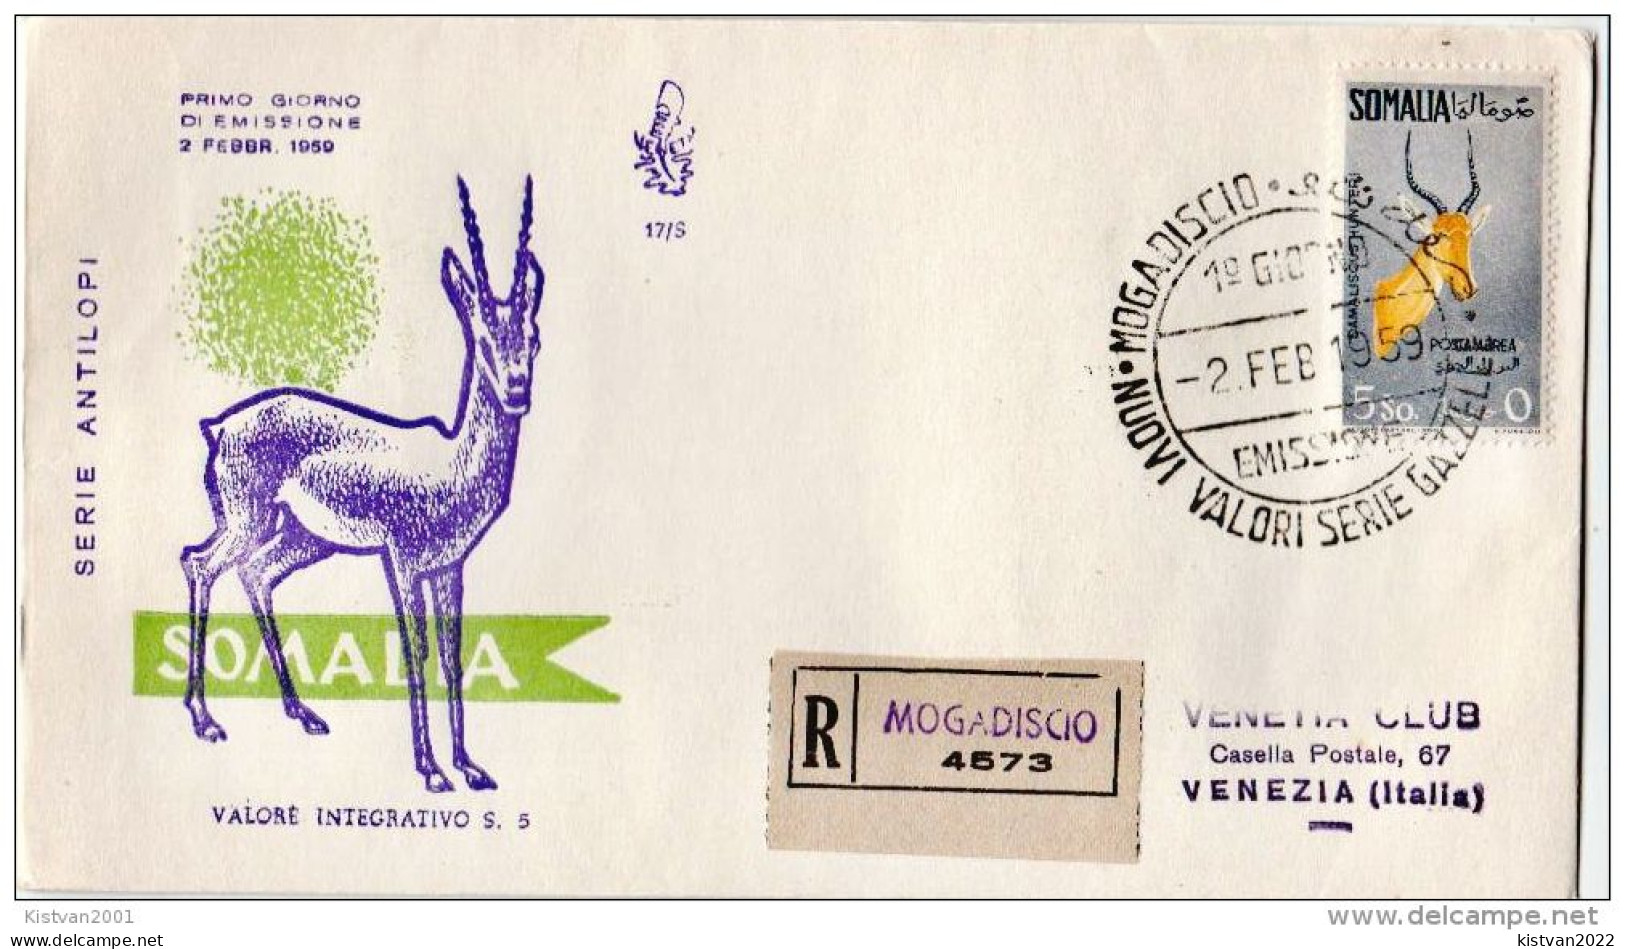 Postal History: Somalia Cover - Gibier